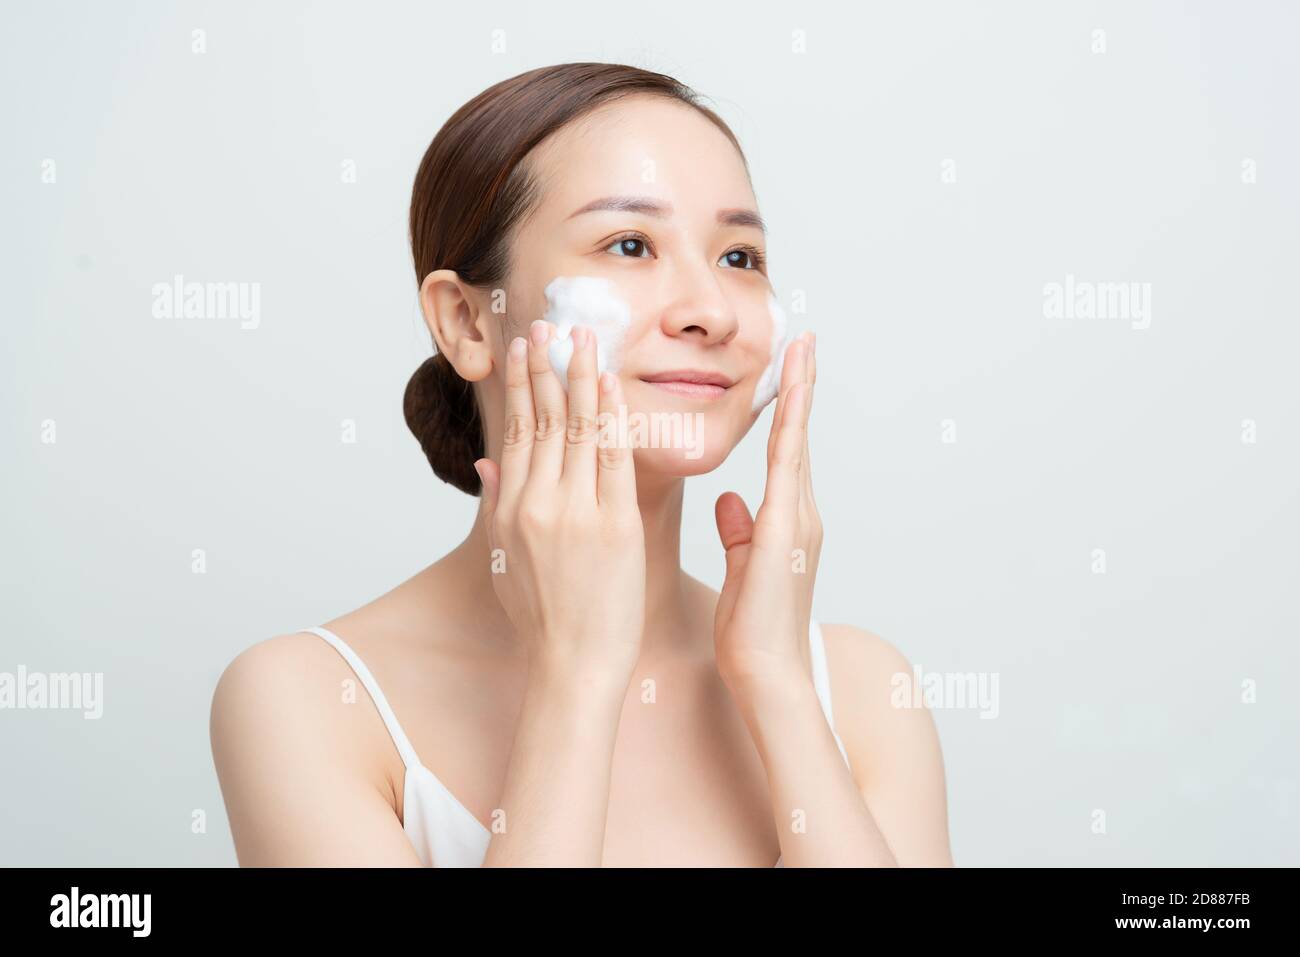 Hautpflege im Gesicht. Frau Anwendung Gesichtsreiniger auf Gesicht Nahaufnahme. Mädchen mit reinigenden kosmetischen Produkt auf der Haut, Waschen Gesicht auf hellen Hintergrund Stockfoto